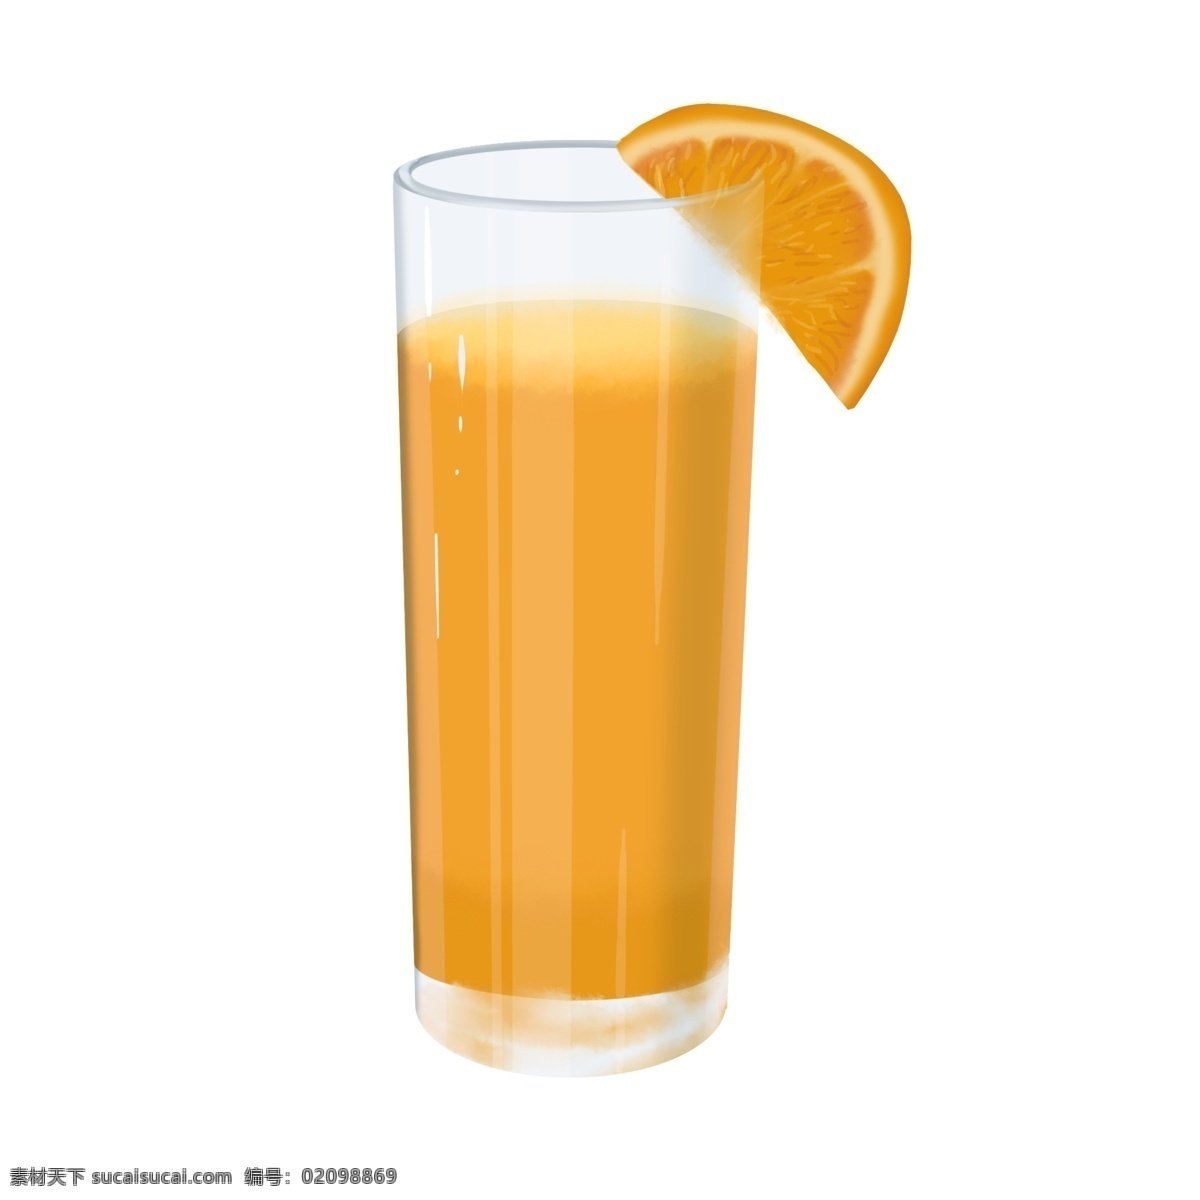 一杯 带 片 橙子 果汁 橙汁 杯子 水果 一片果肉 一片橙子 饮料 插画 免抠 手绘